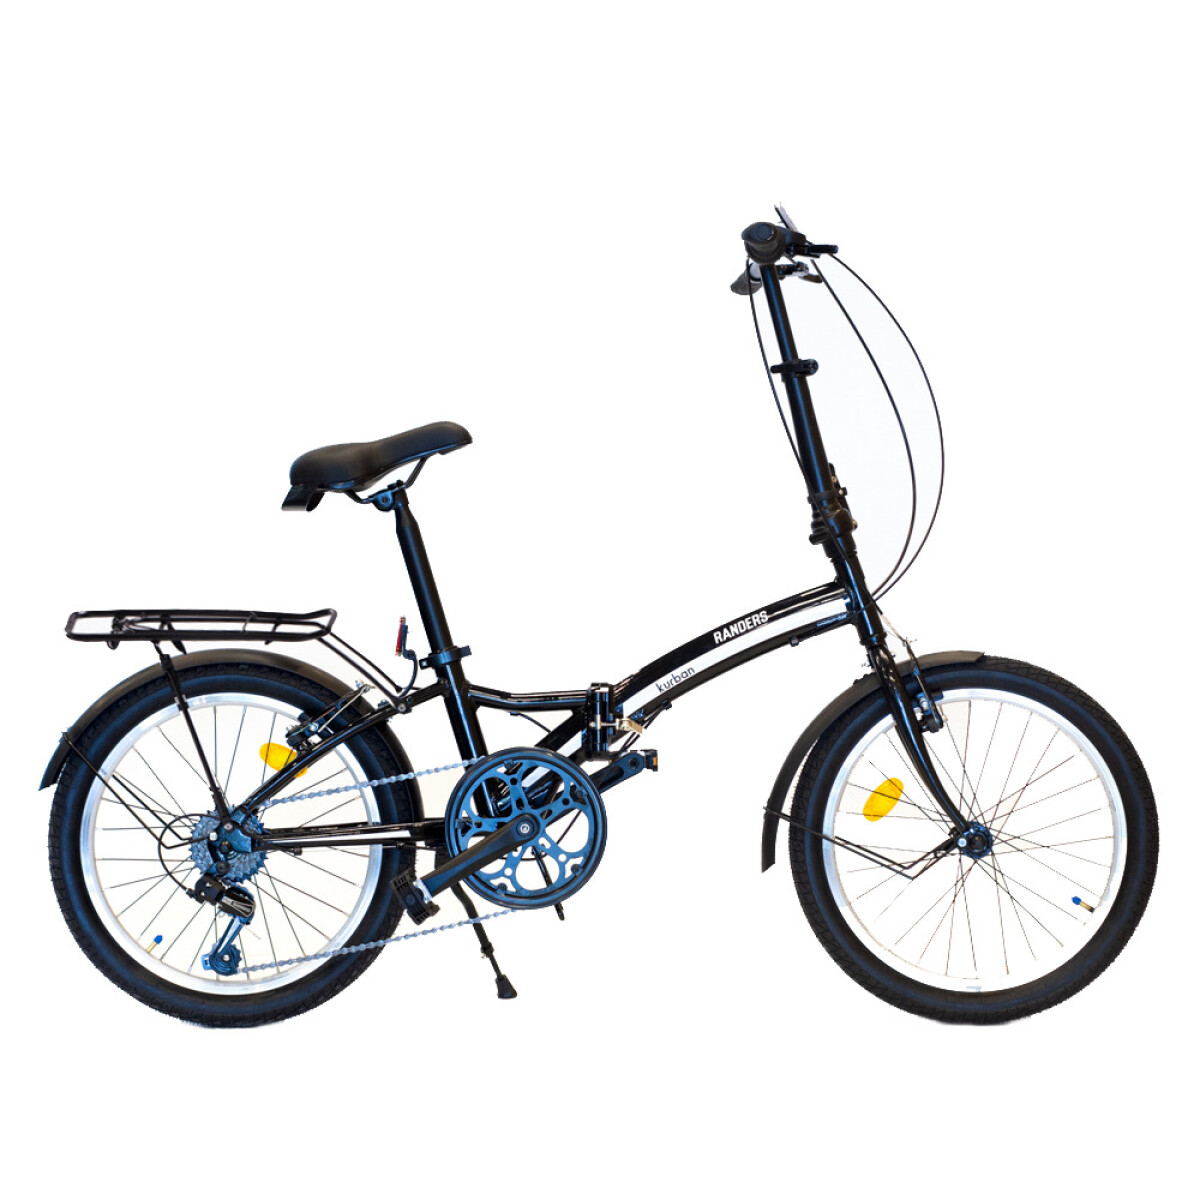 Bicicleta Plegable cuadro aluminio rod 20 y cambios Shimano - Negra 